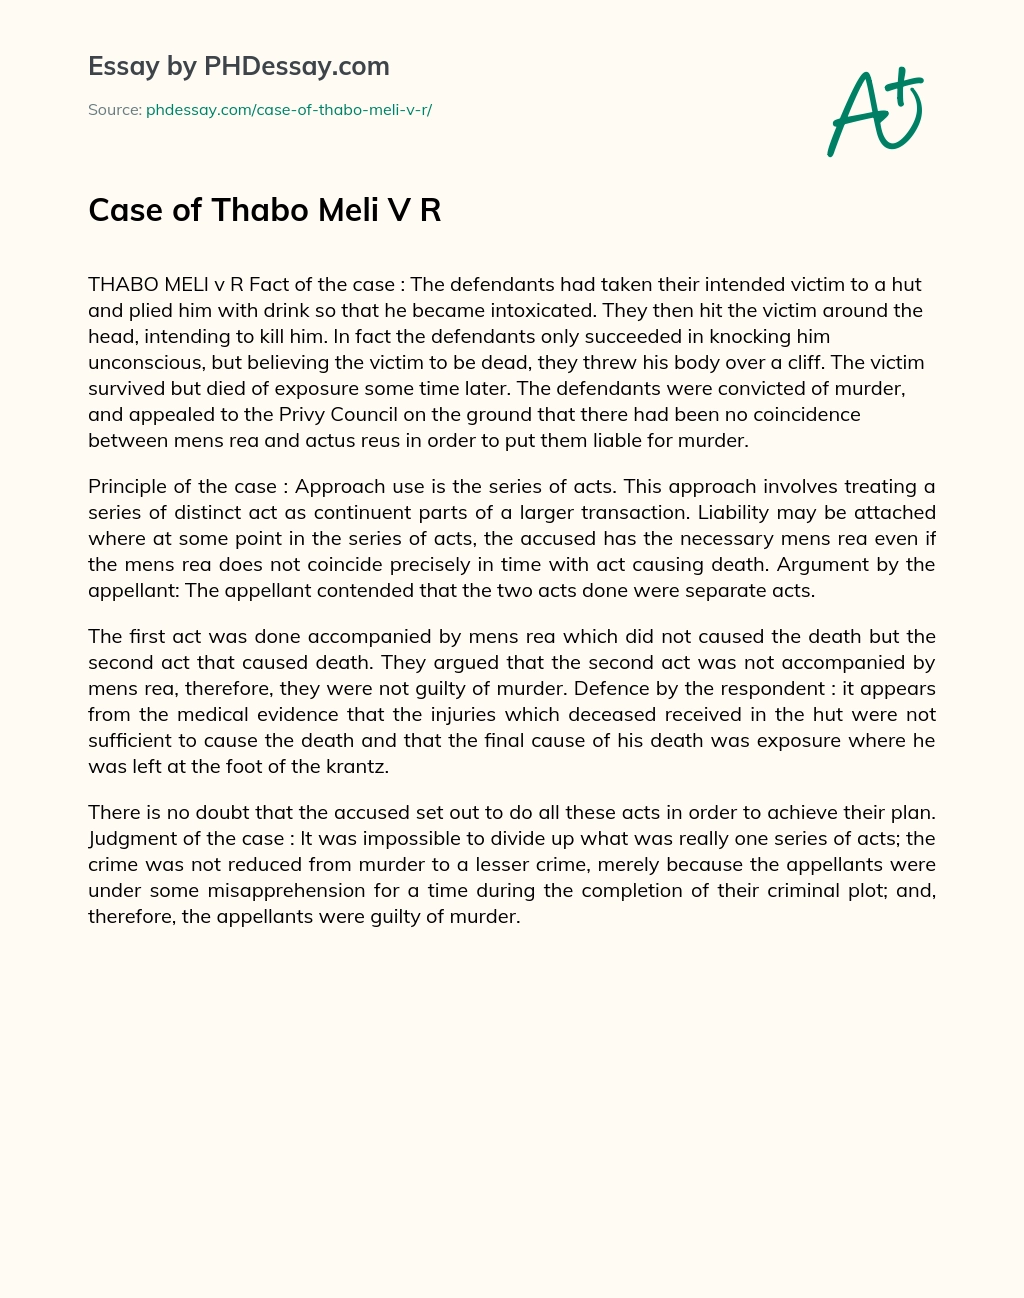 Case of Thabo Meli V R essay